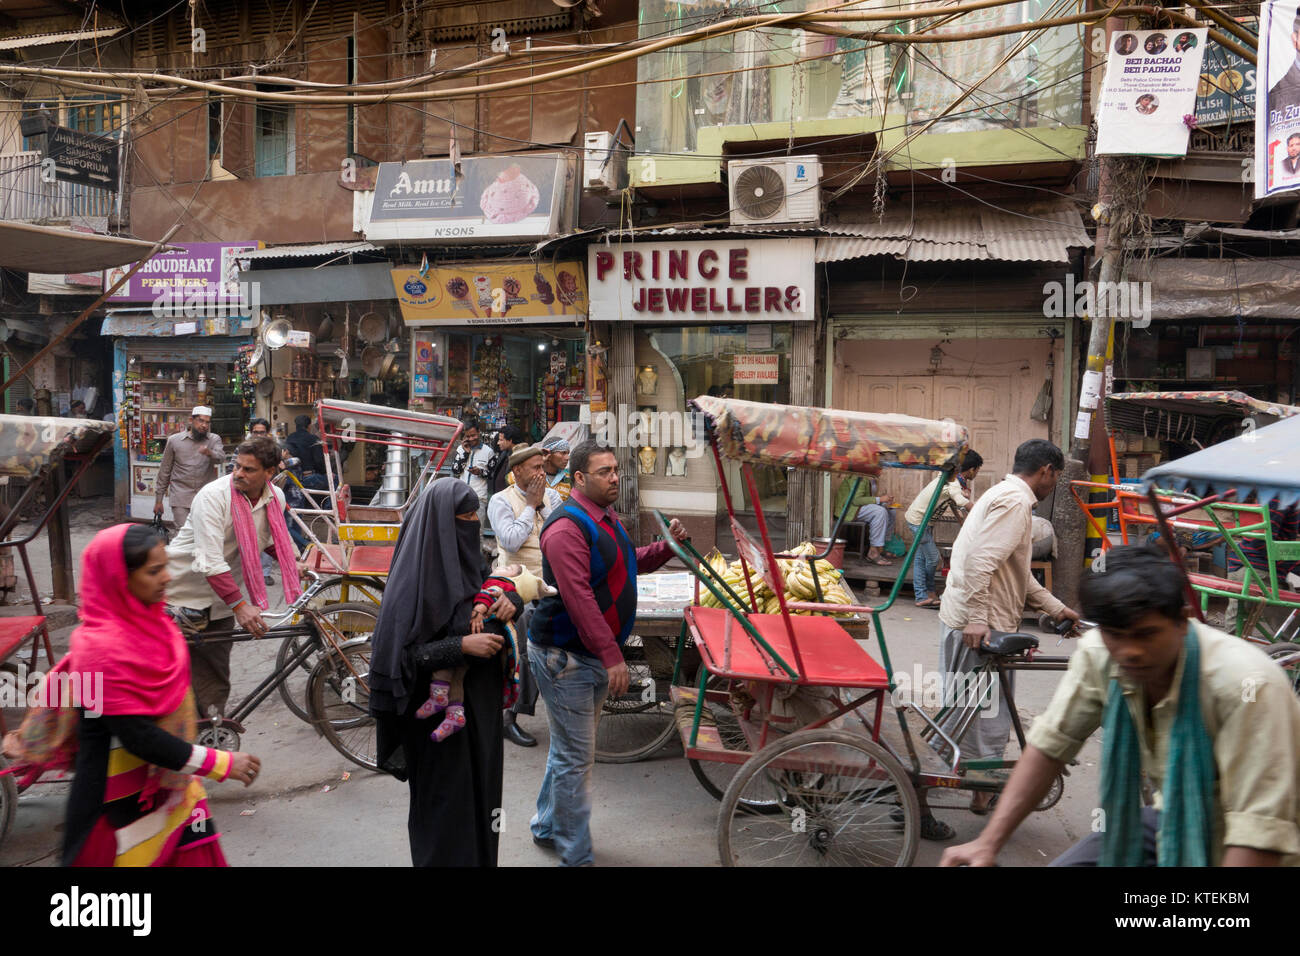 Busy market street scene in old Delhi, New Delhi, India Stock Photo